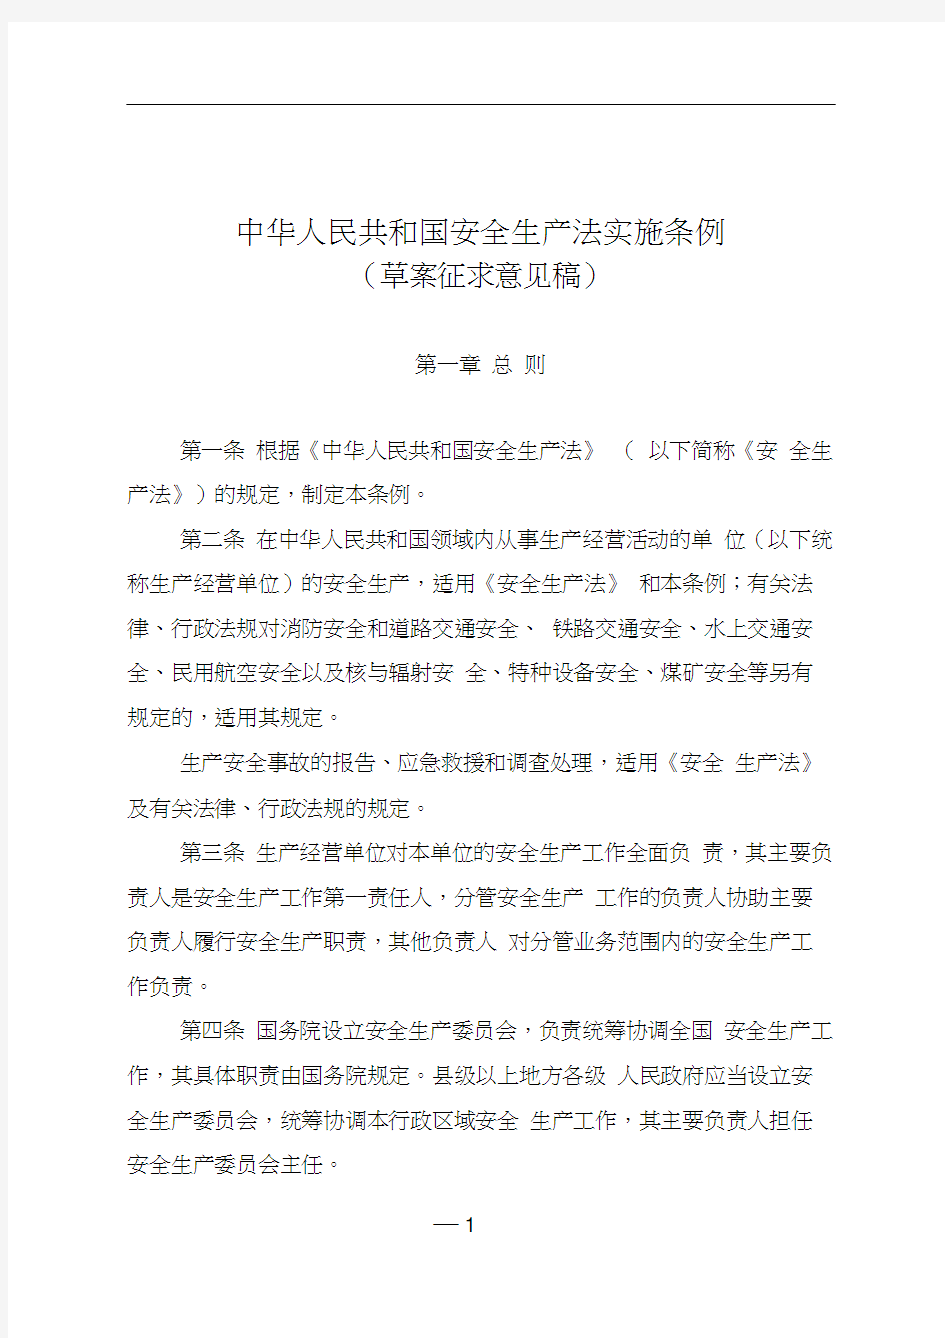 中华人民共和国安全生产法实施条例(征求意见)